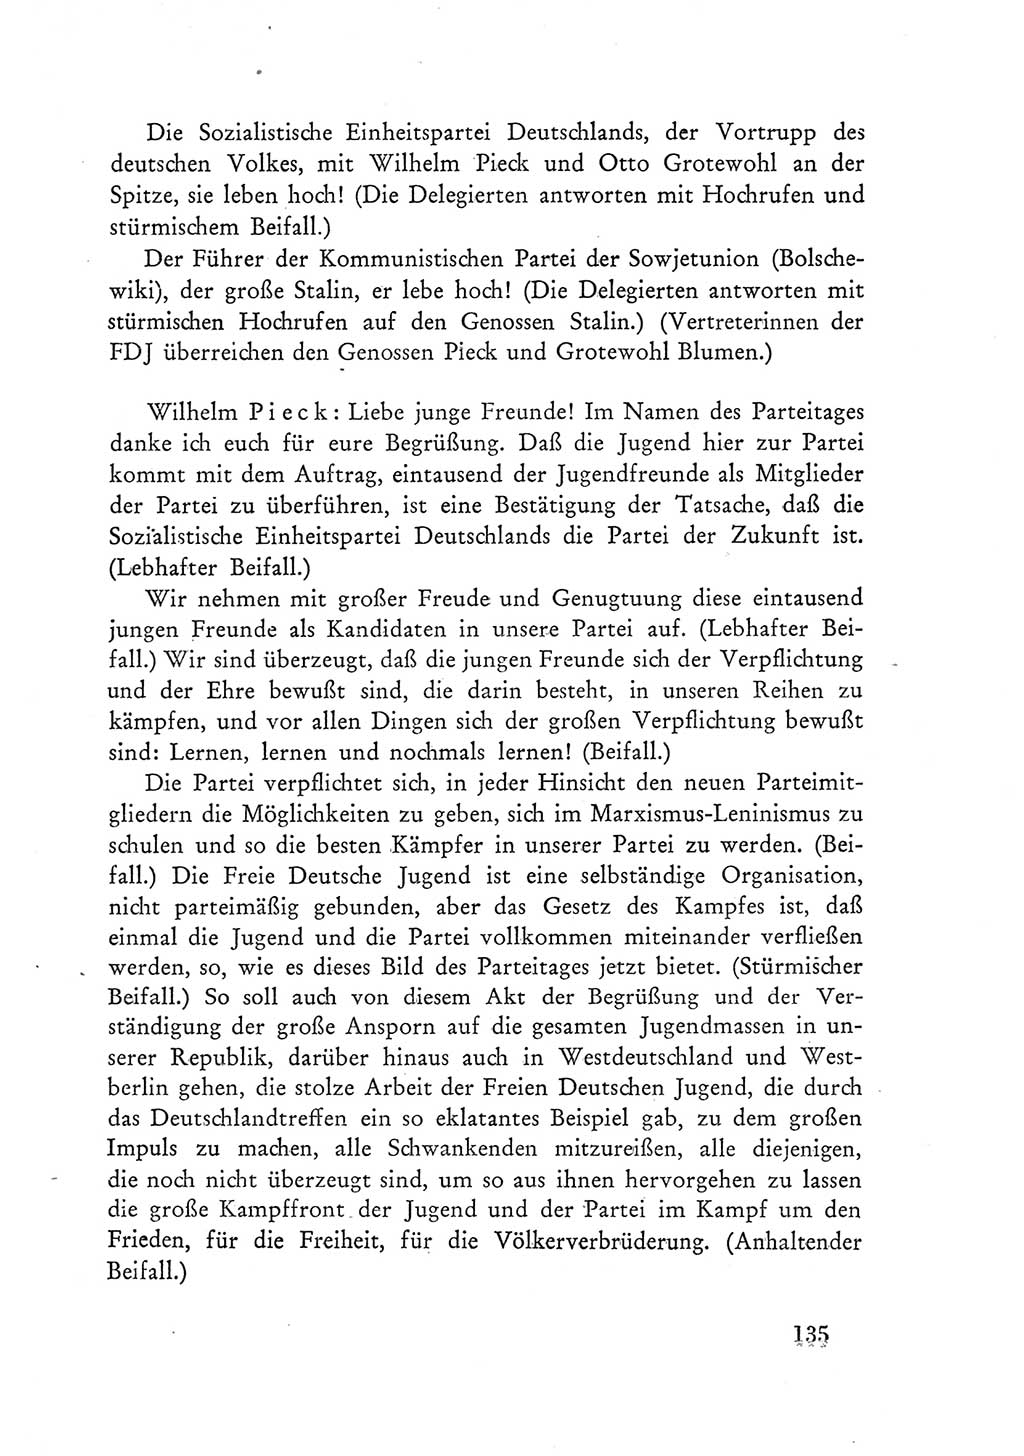 Protokoll der Verhandlungen des Ⅲ. Parteitages der Sozialistischen Einheitspartei Deutschlands (SED) [Deutsche Demokratische Republik (DDR)] 1950, Band 1, Seite 135 (Prot. Verh. Ⅲ. PT SED DDR 1950, Bd. 1, S. 135)